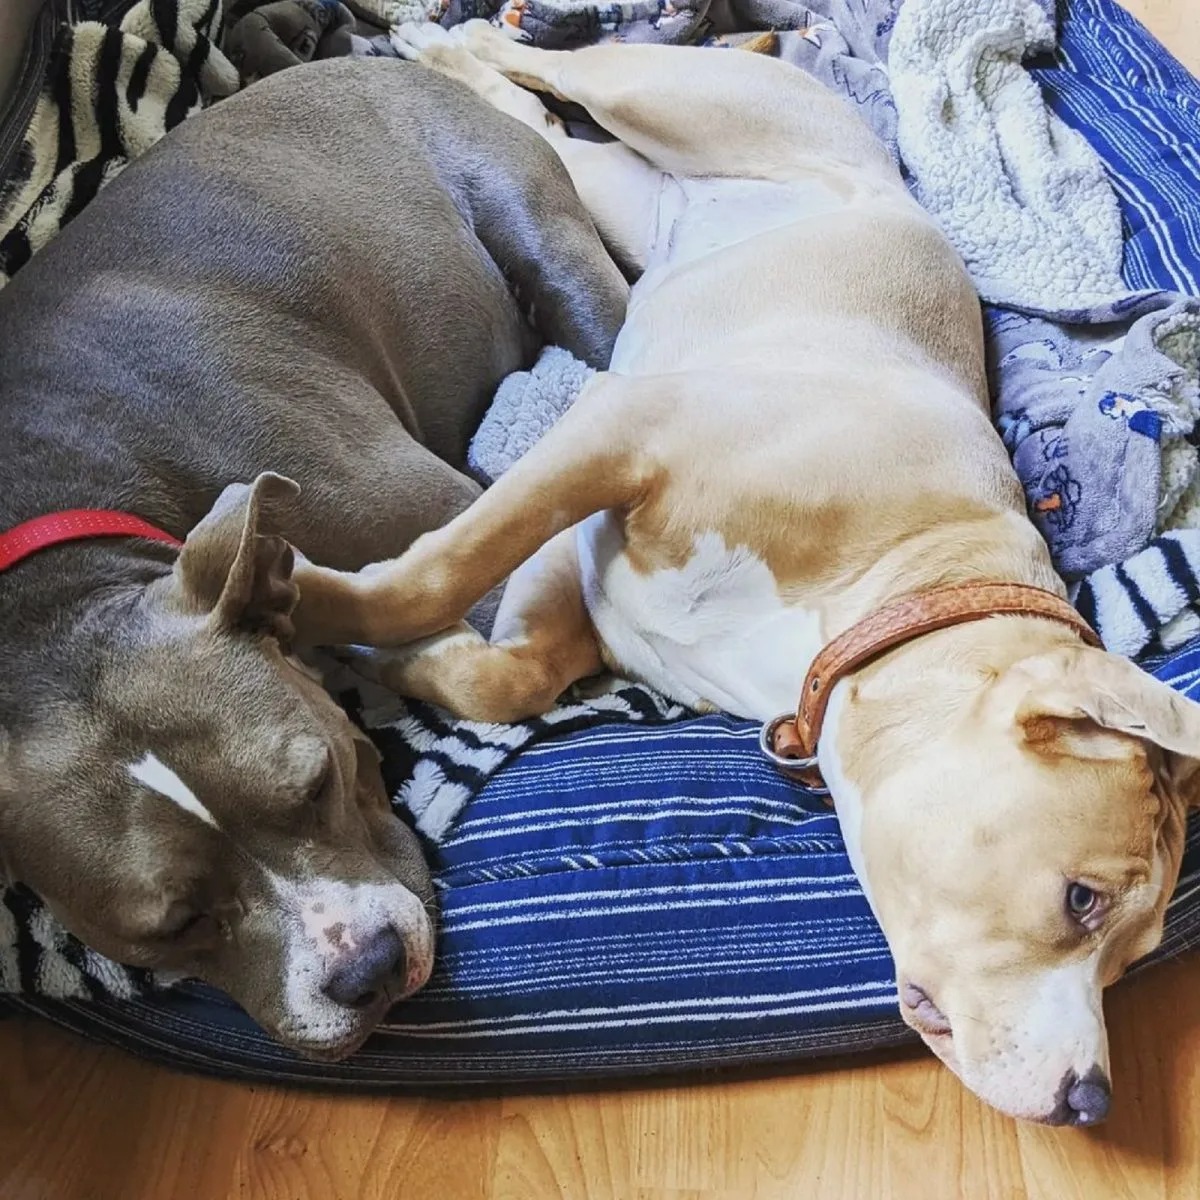 Zwei Hunde liegen auf einem Hundebett